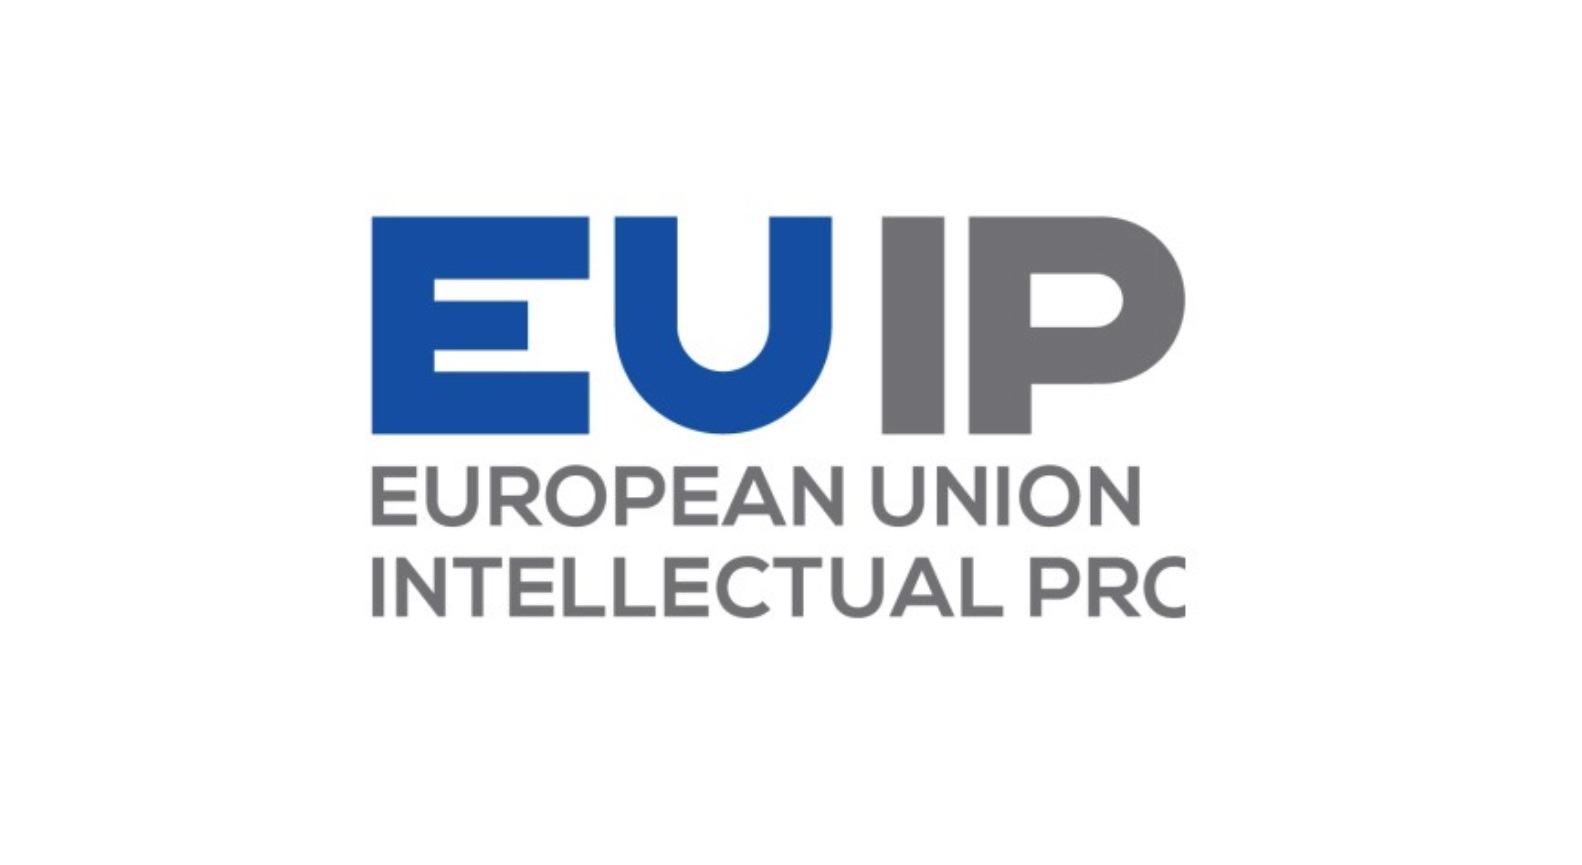 Oficina , Propiedad Intelectual , Unión Europea, programapublicidad,